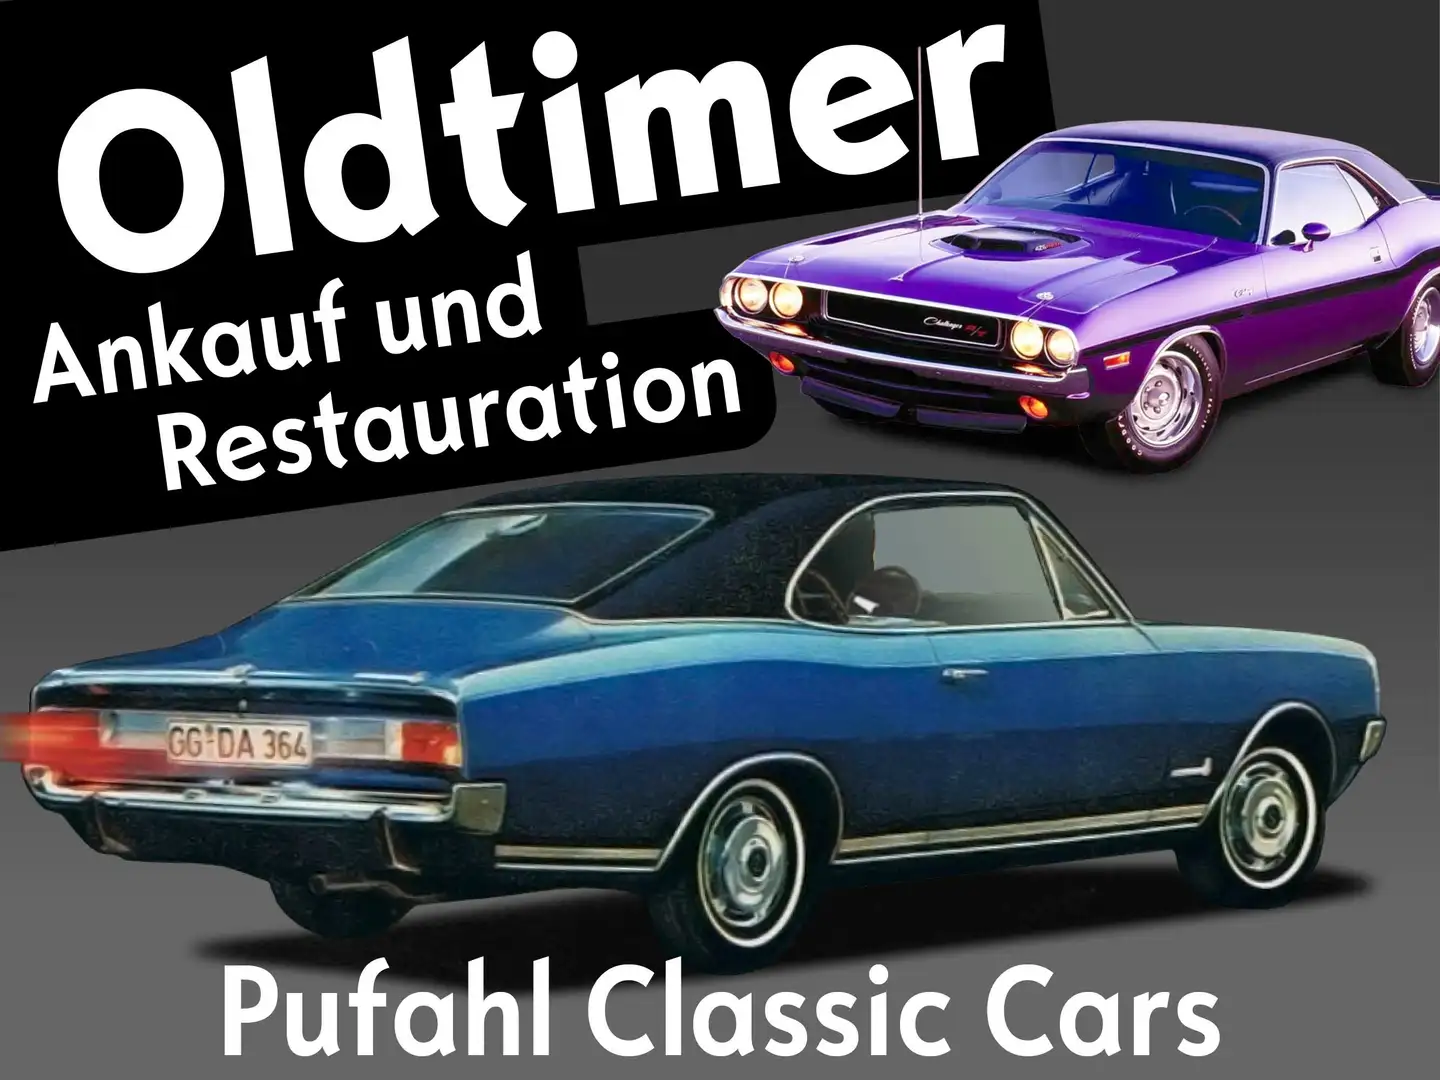 Pontiac Firebird Pufahl Classic Cars Ankauf und Restauration Noir - 1